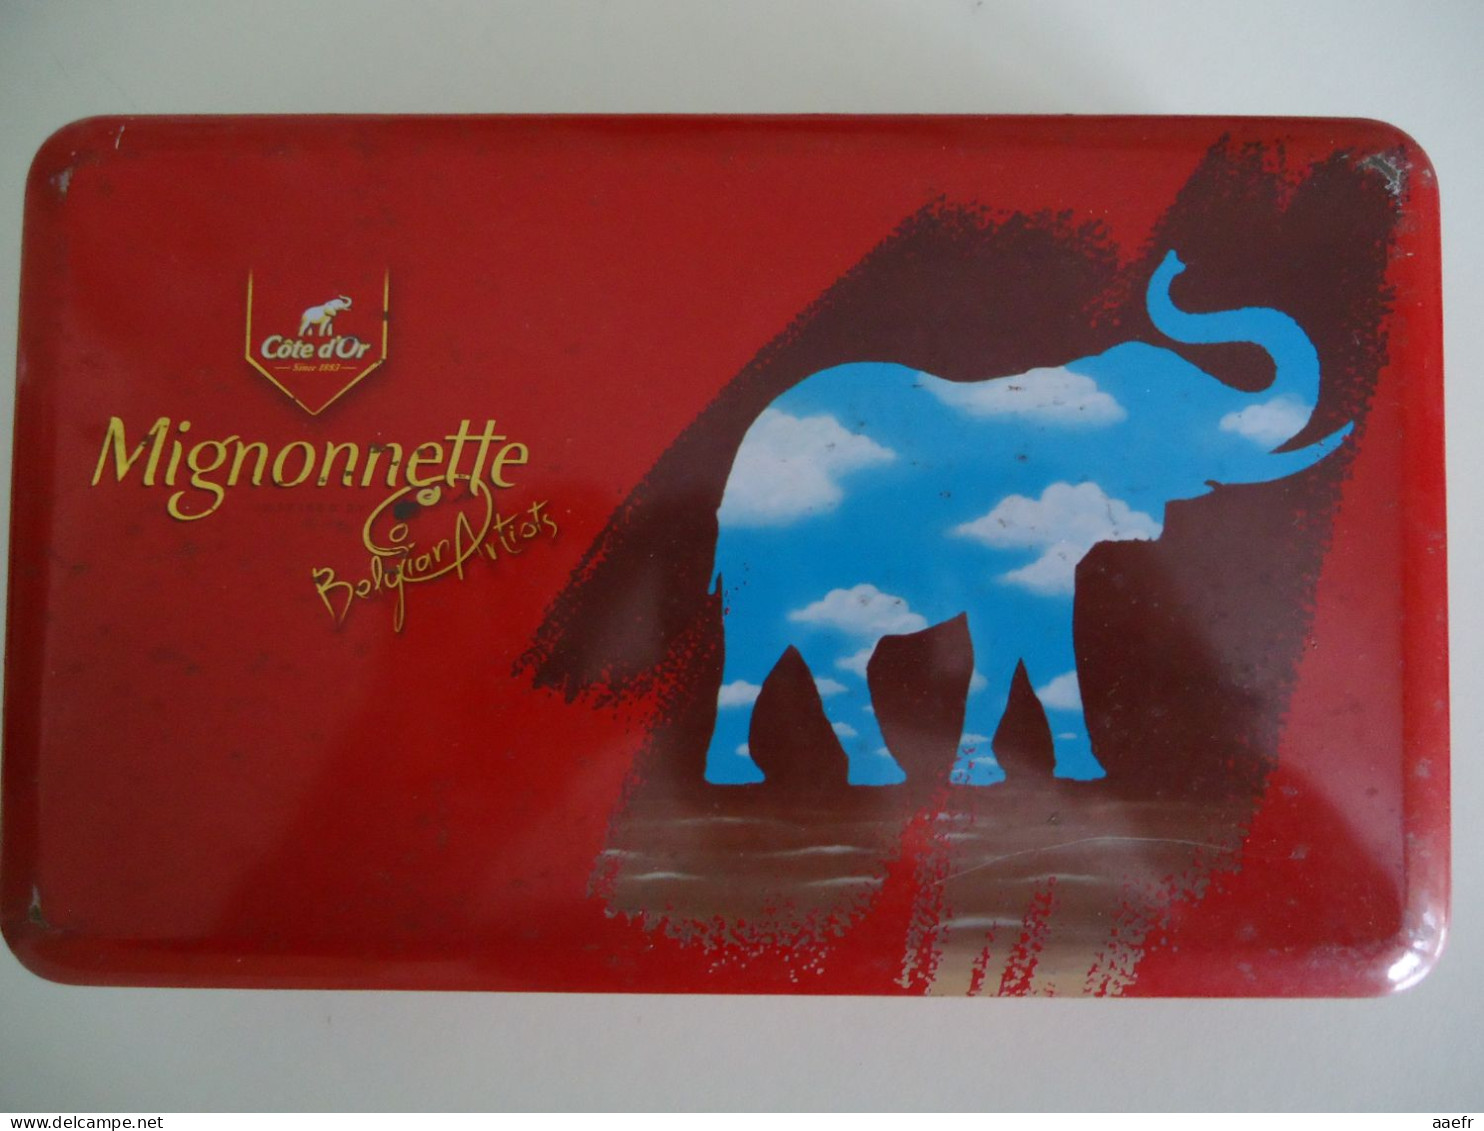 Boîte En Métal 2006 -  Côte D'or, Mignonnette, Belgian Artists  - Illustration "à La René Magritte", Eléphant - Boîtes